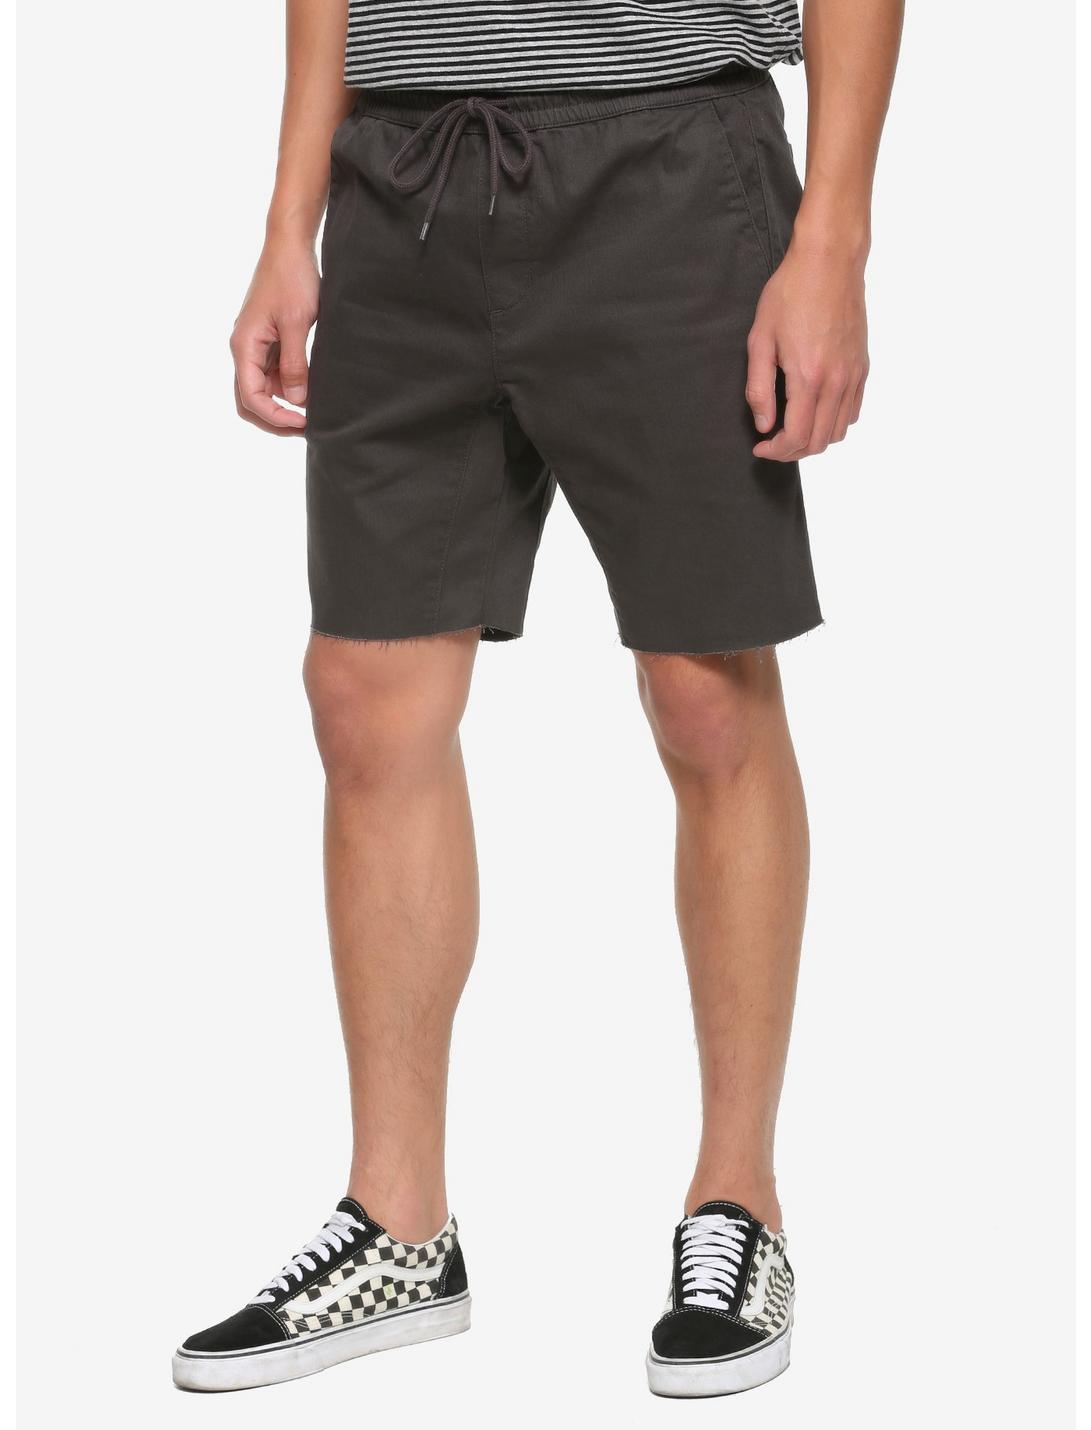 HT Denim Charcoal Jogger Shorts, GREY, hi-res